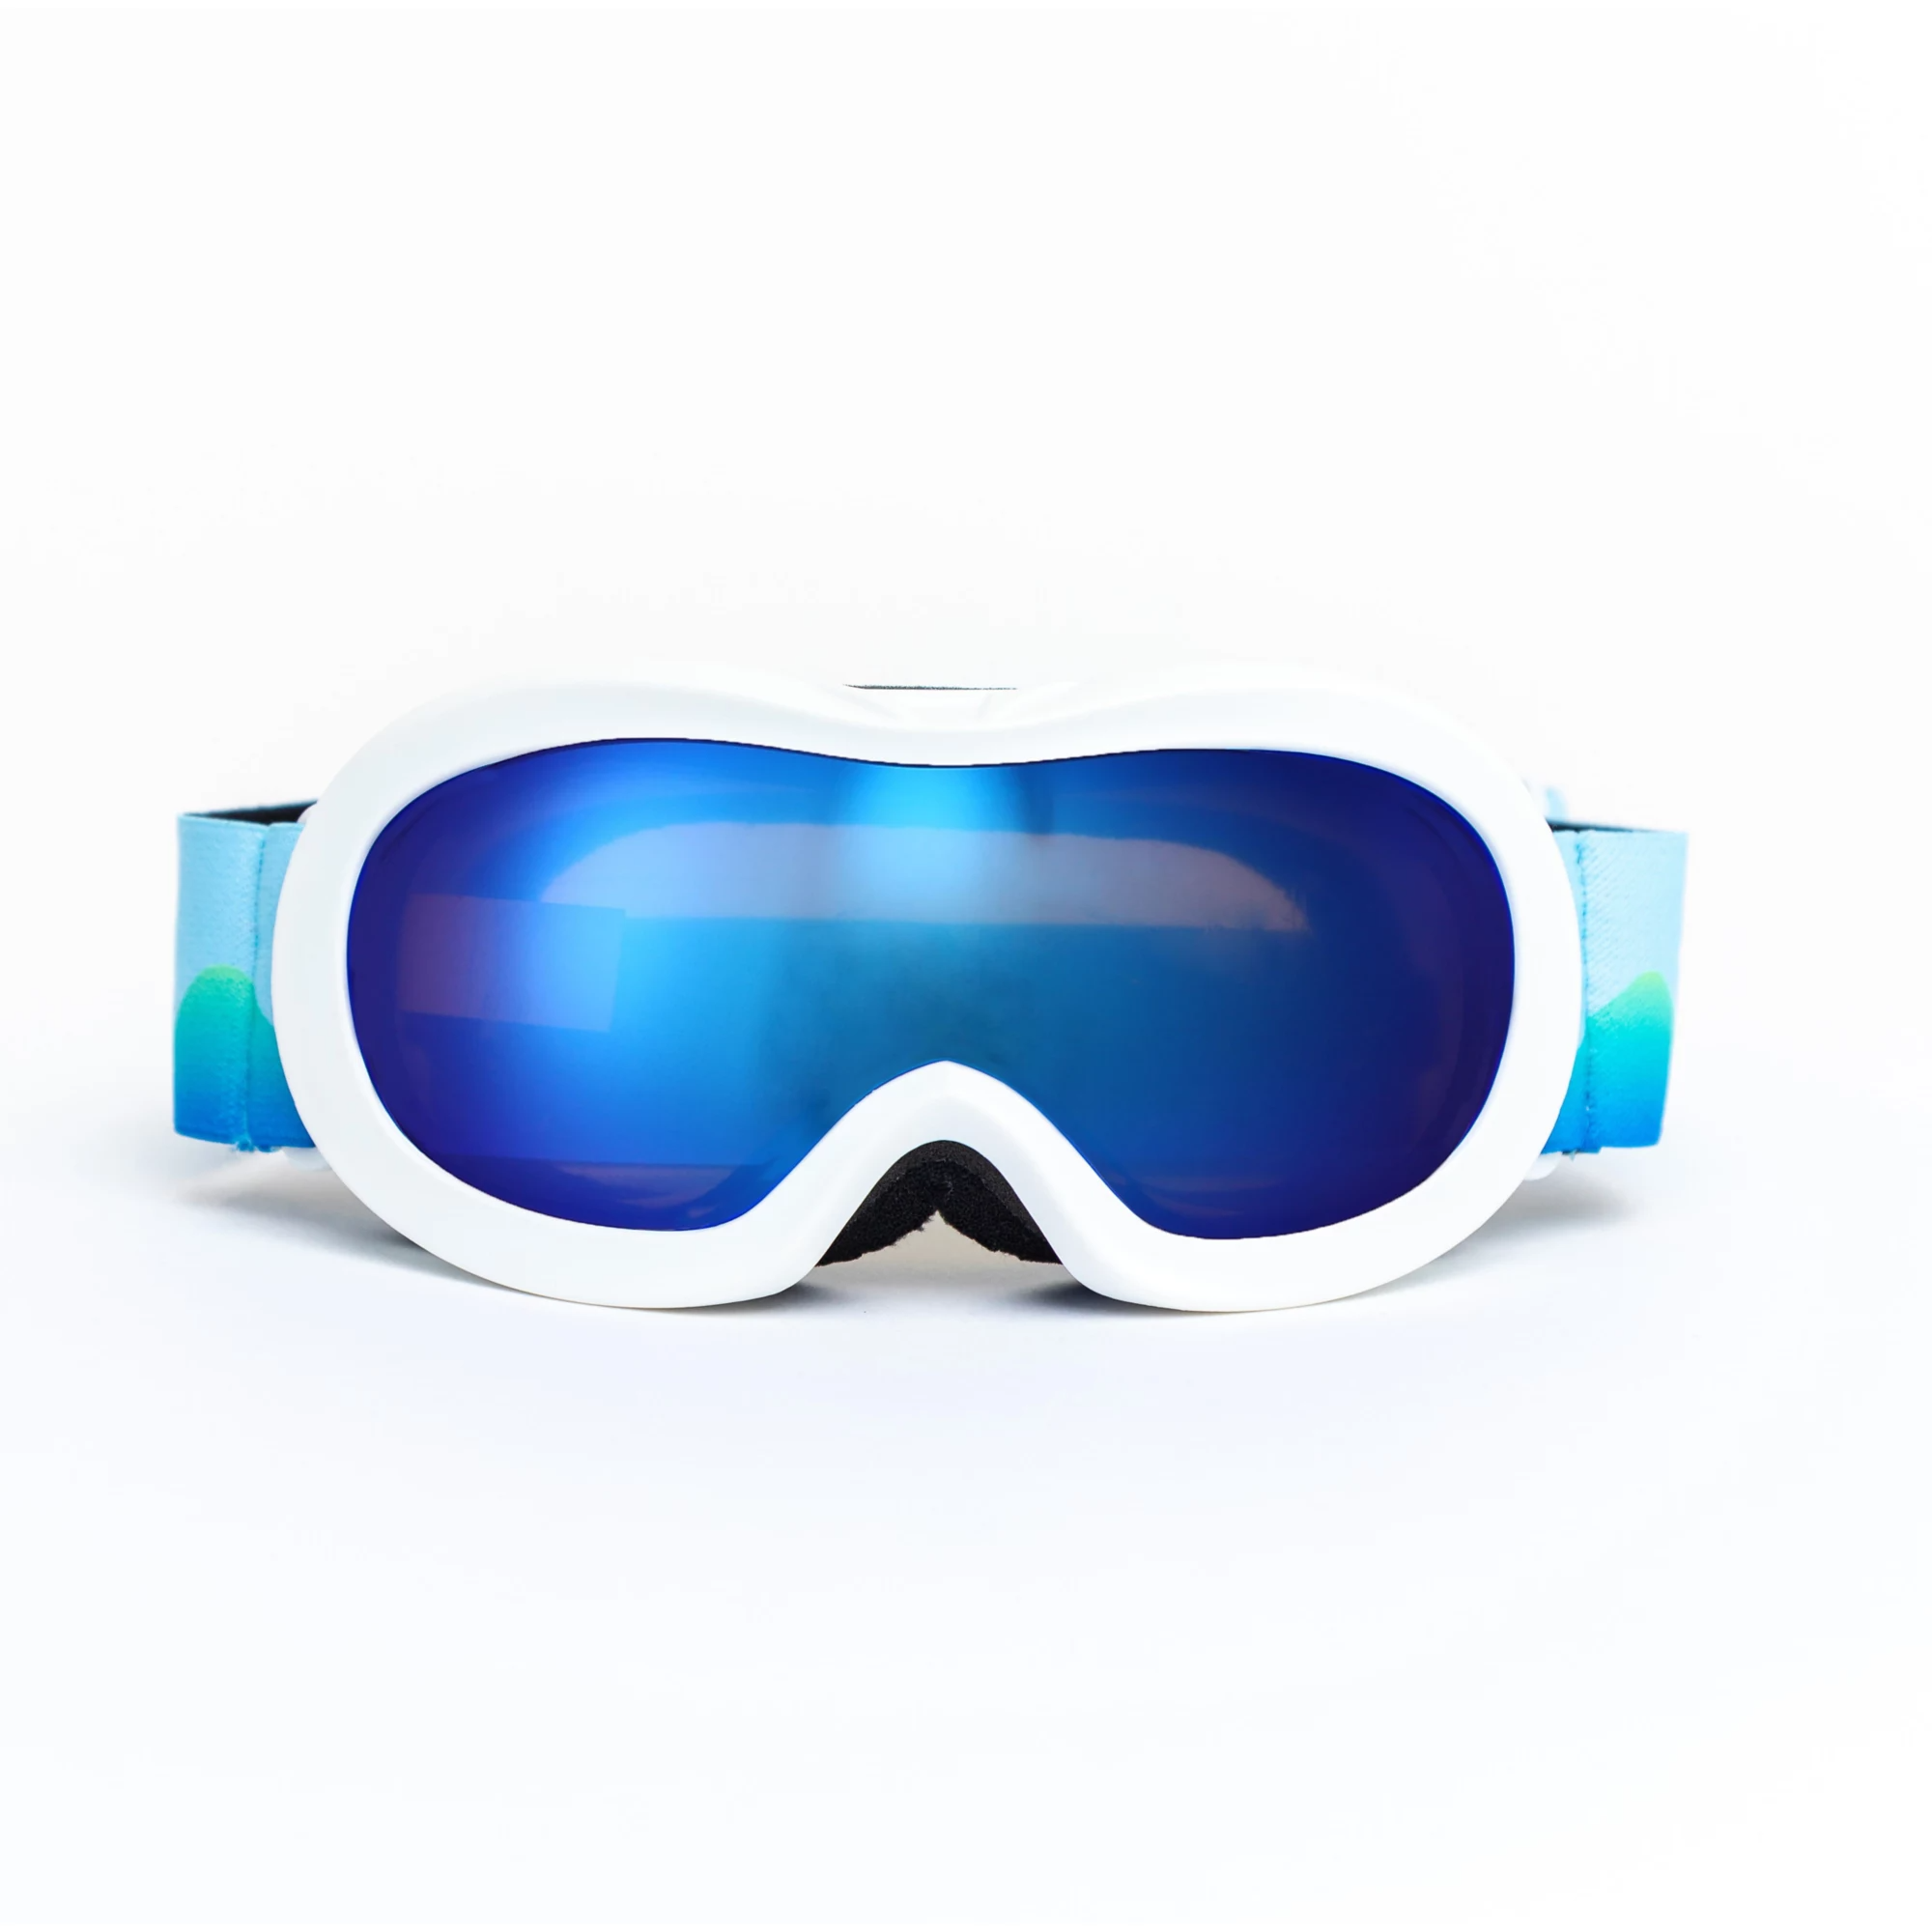 Mirrored ski goggles